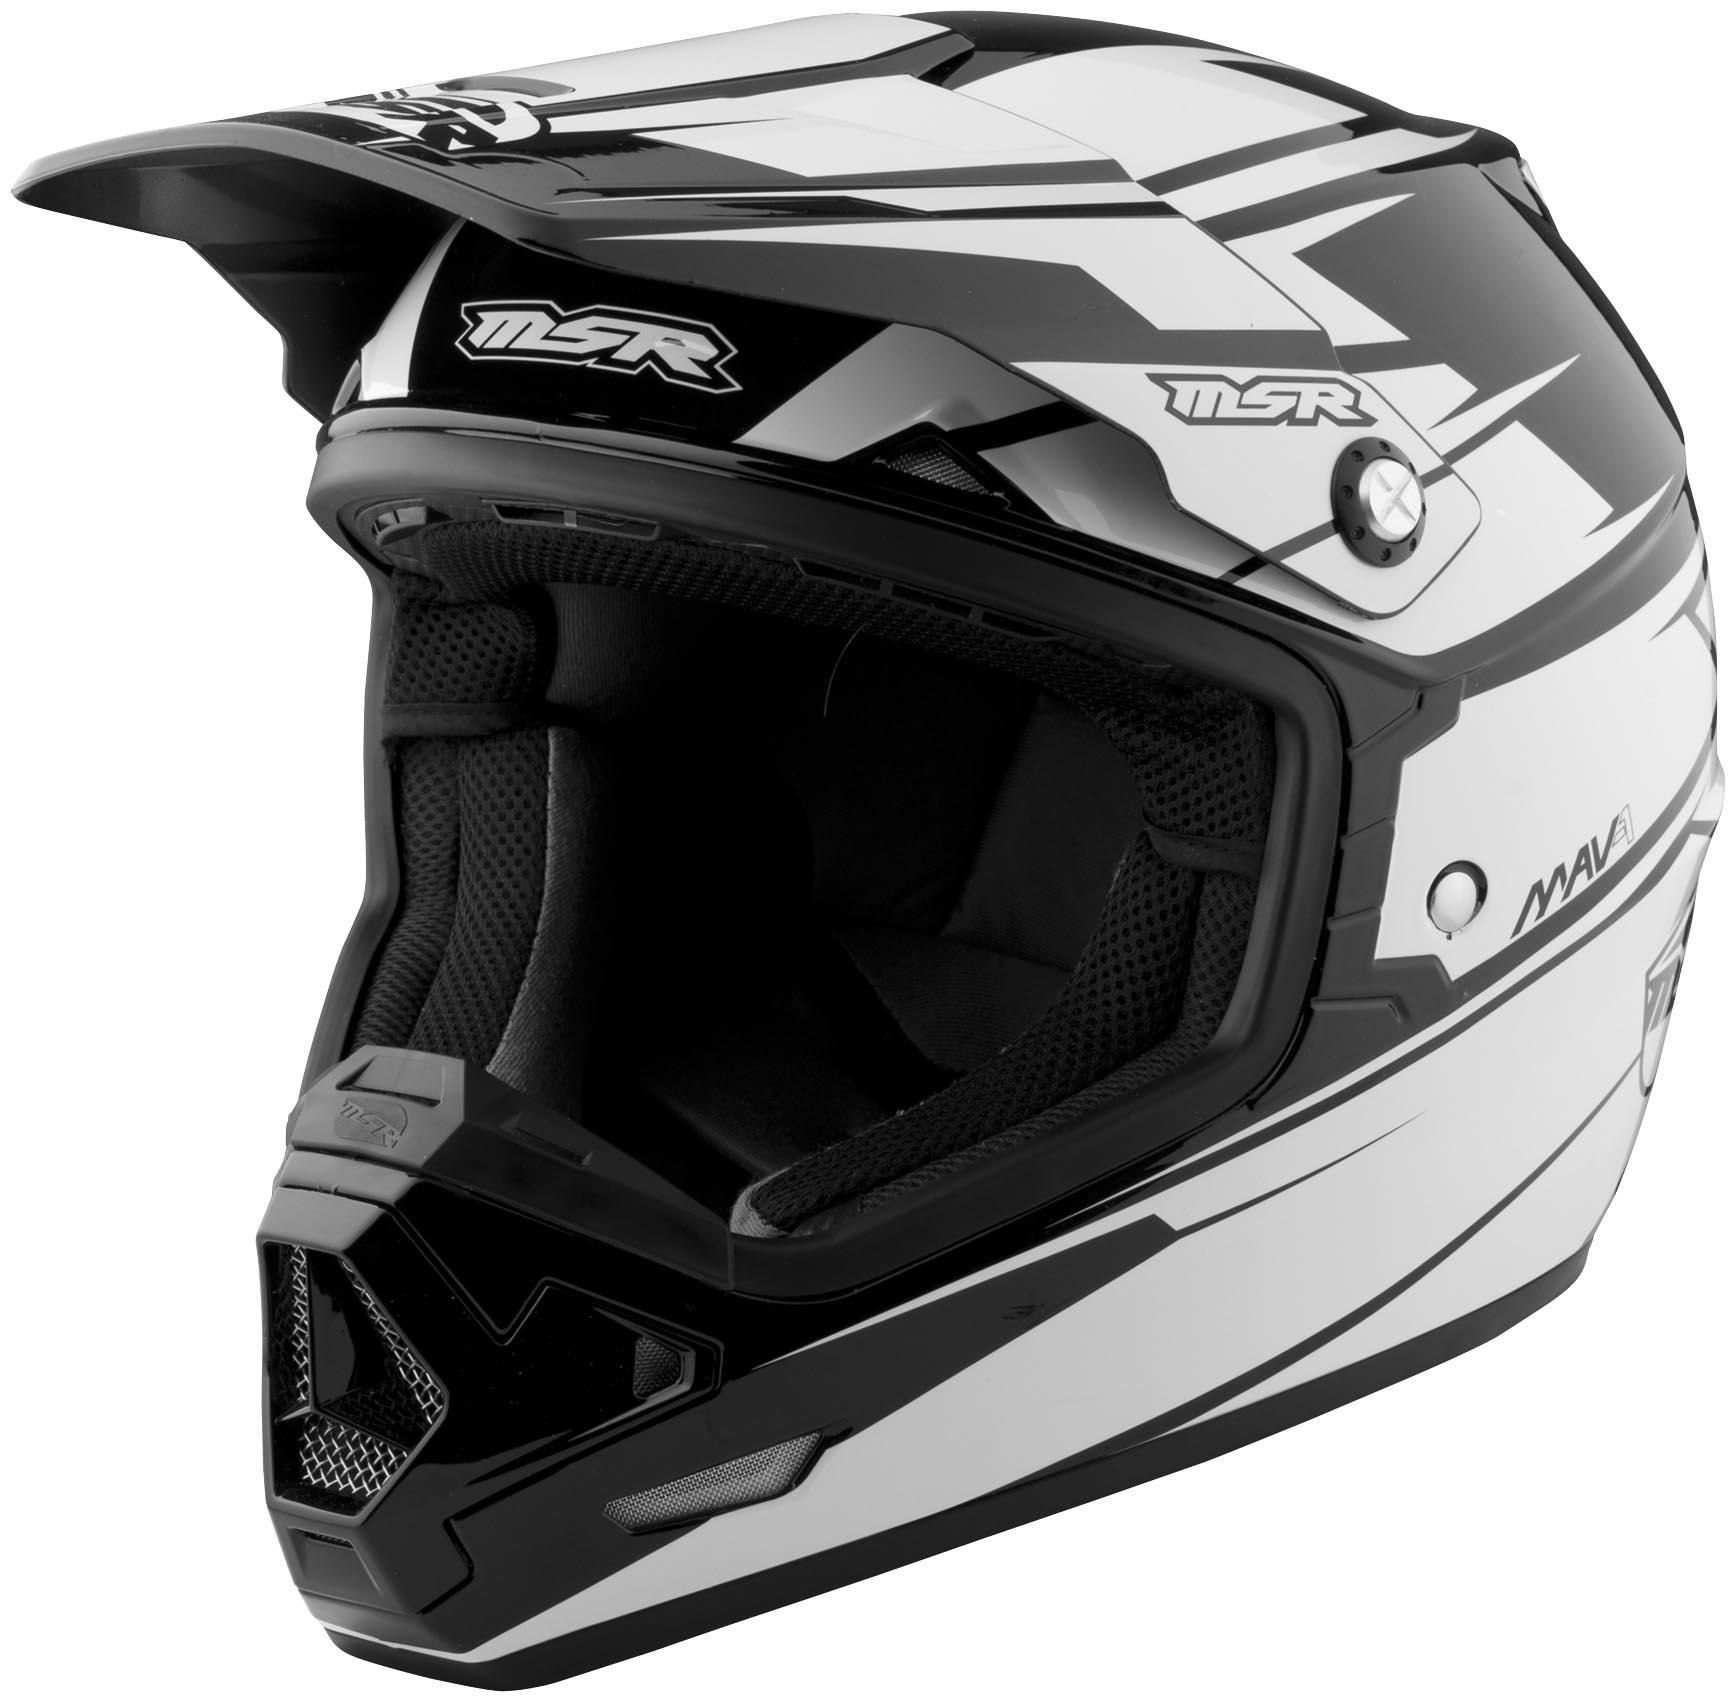 45XO-MSR-359324 Chin Vent for 2014 MAV1 Helmet - Black/White